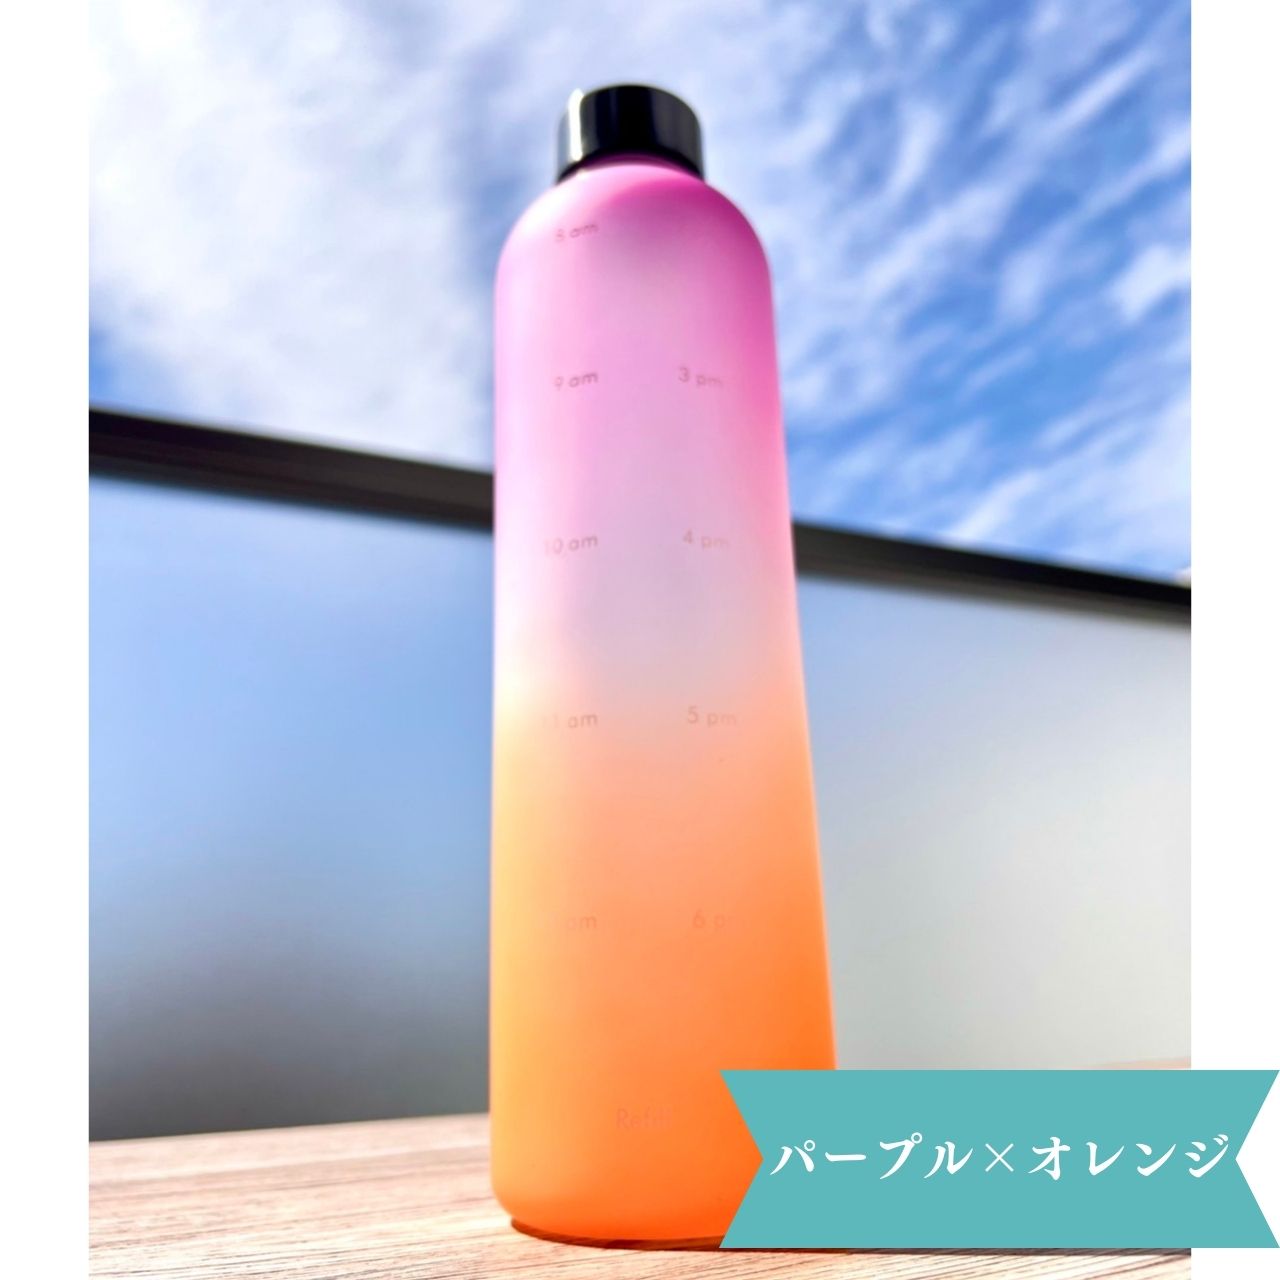 ウォーターボトル 青 紫 ダイエット 水筒 メモリ 便利 ヨガ モチベーション